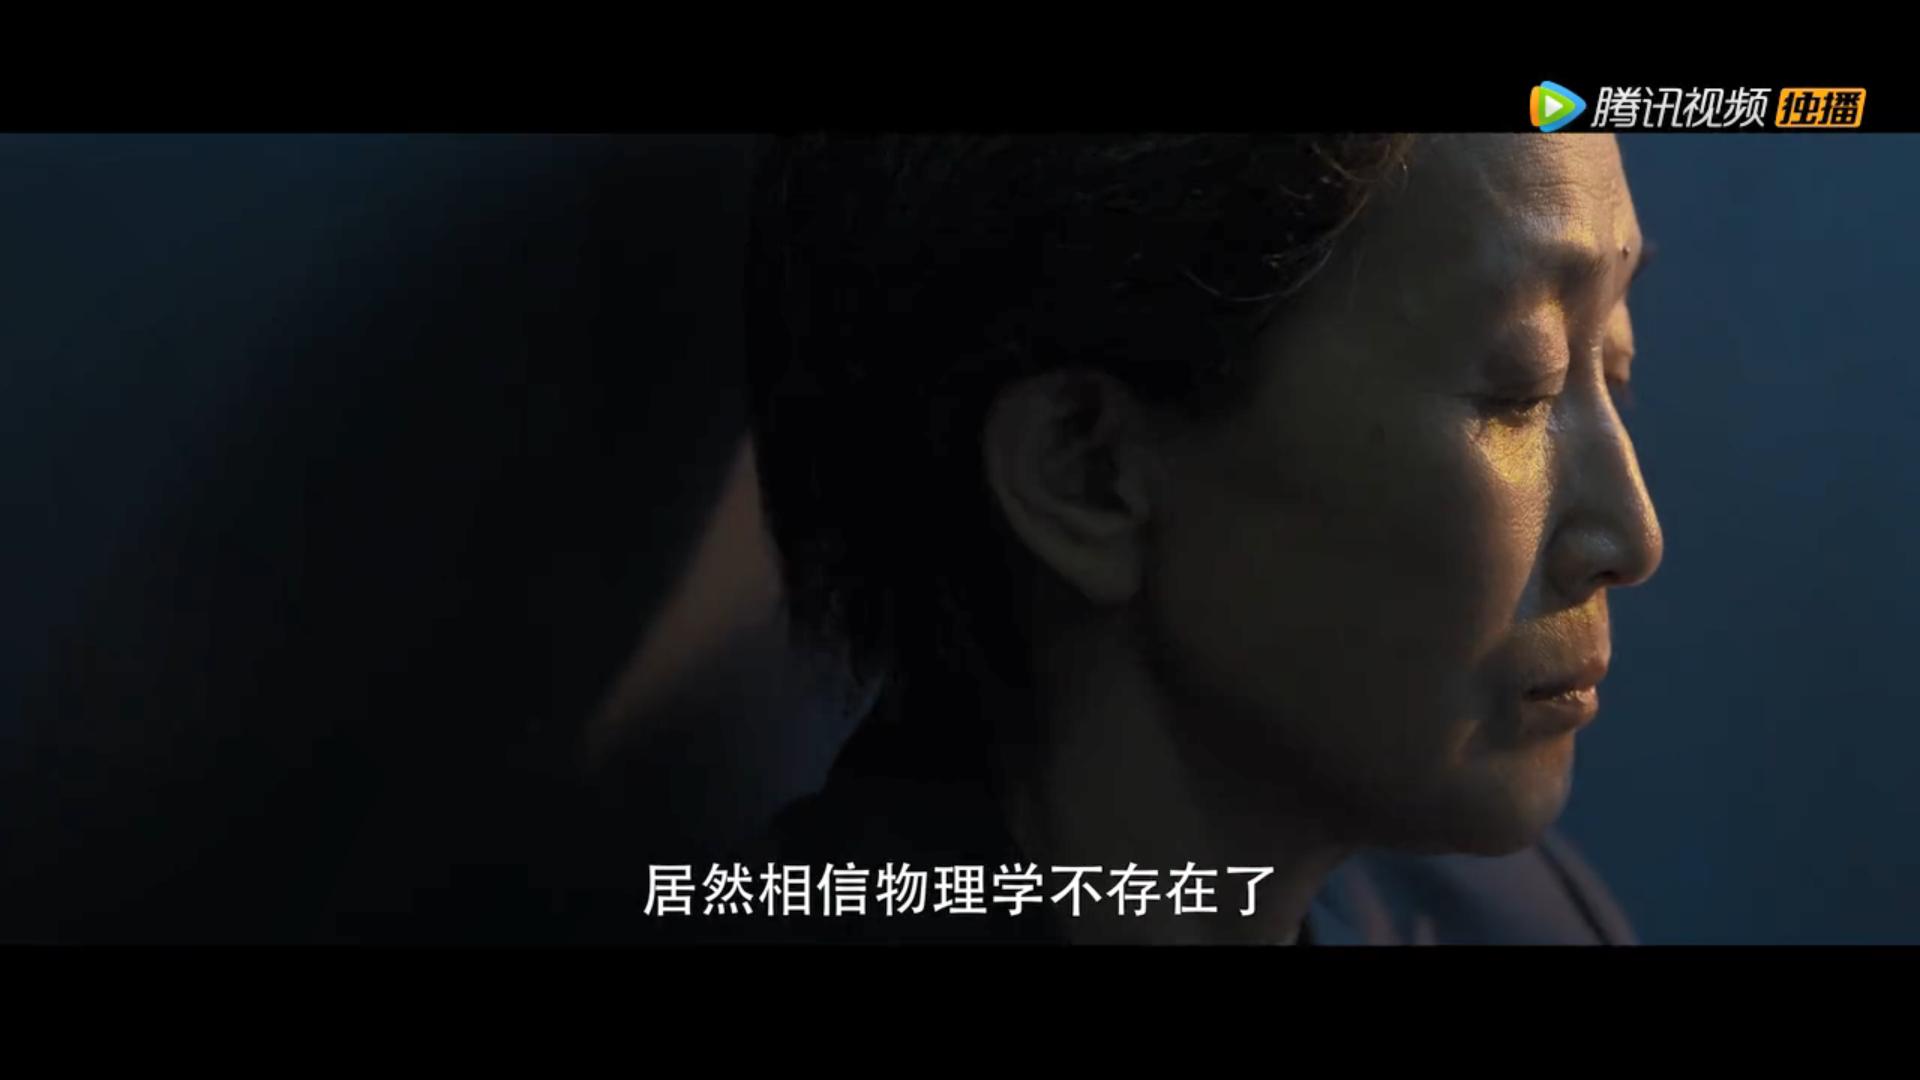 国产电视剧《3体》尾爆预告 腾讯视频独播